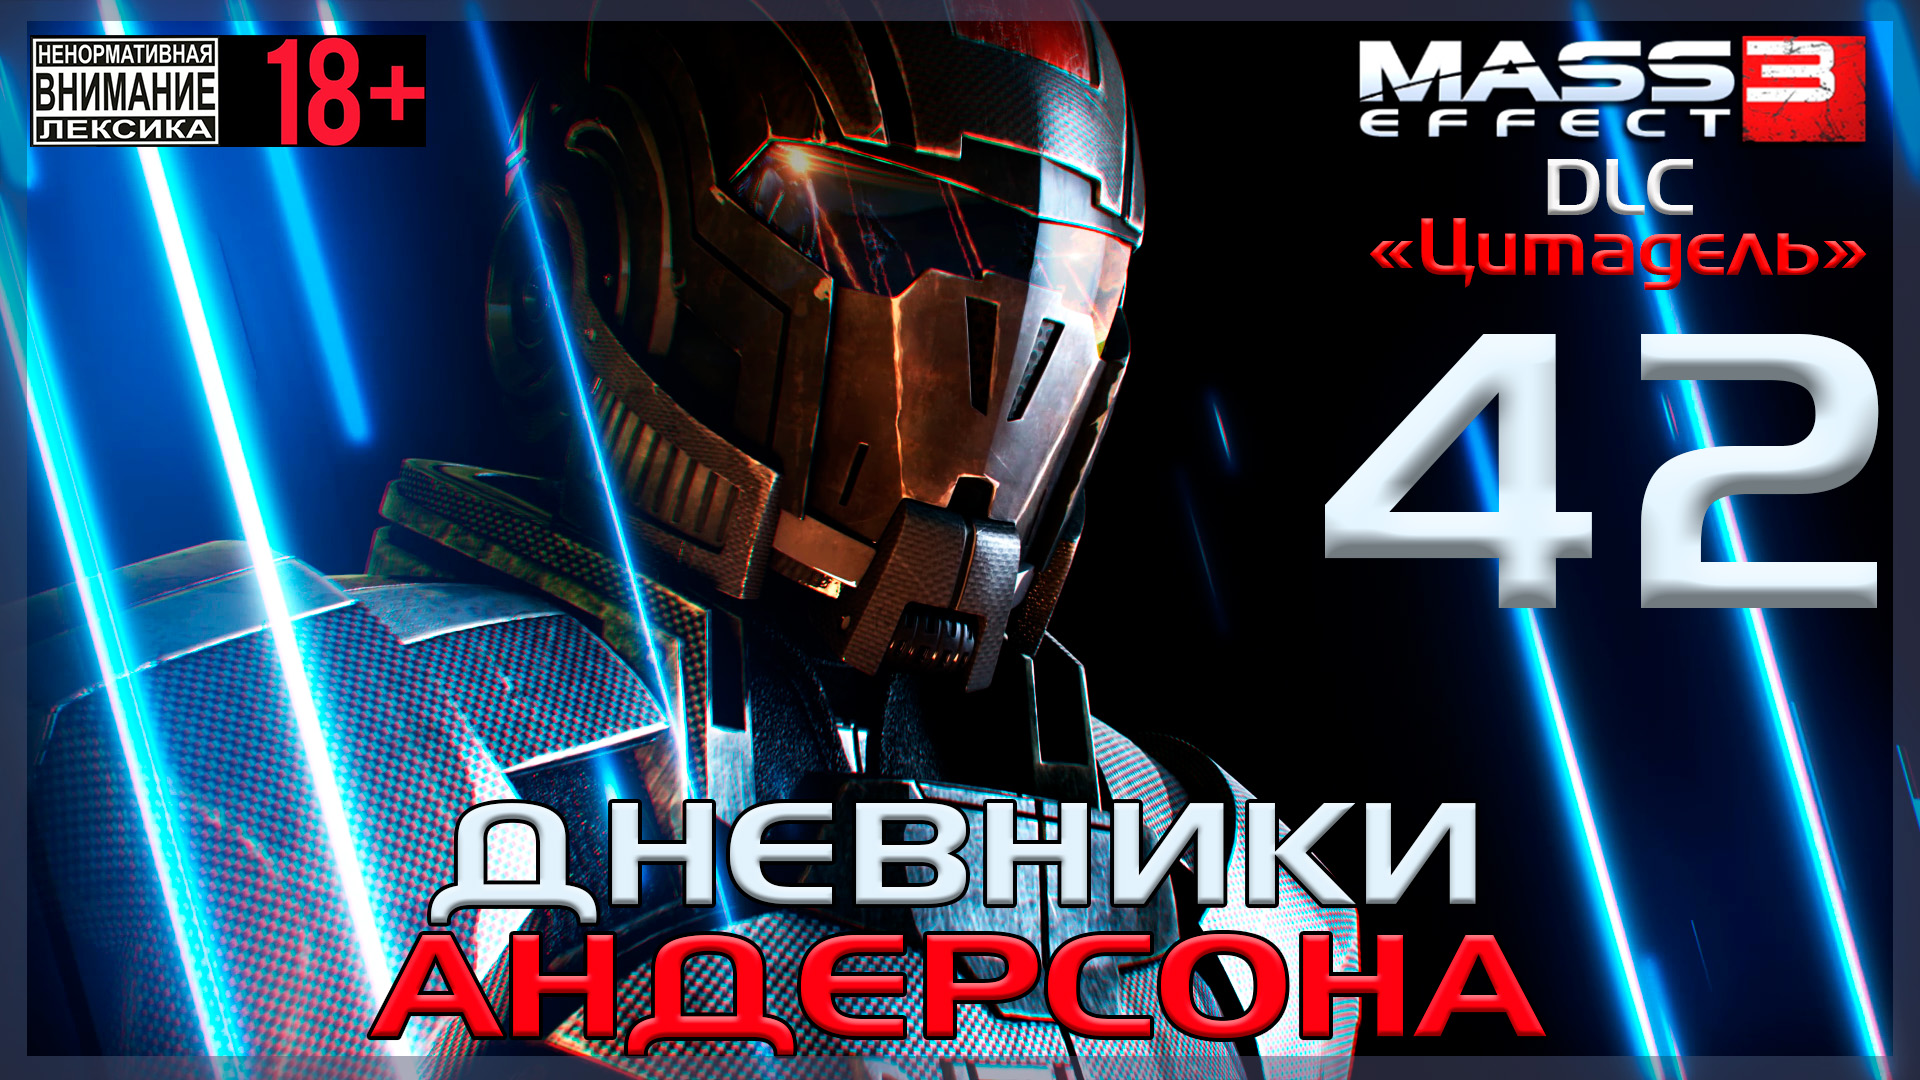 Mass Effect 3 - DLC Цитадель / Original #42 Дневники Андерсона